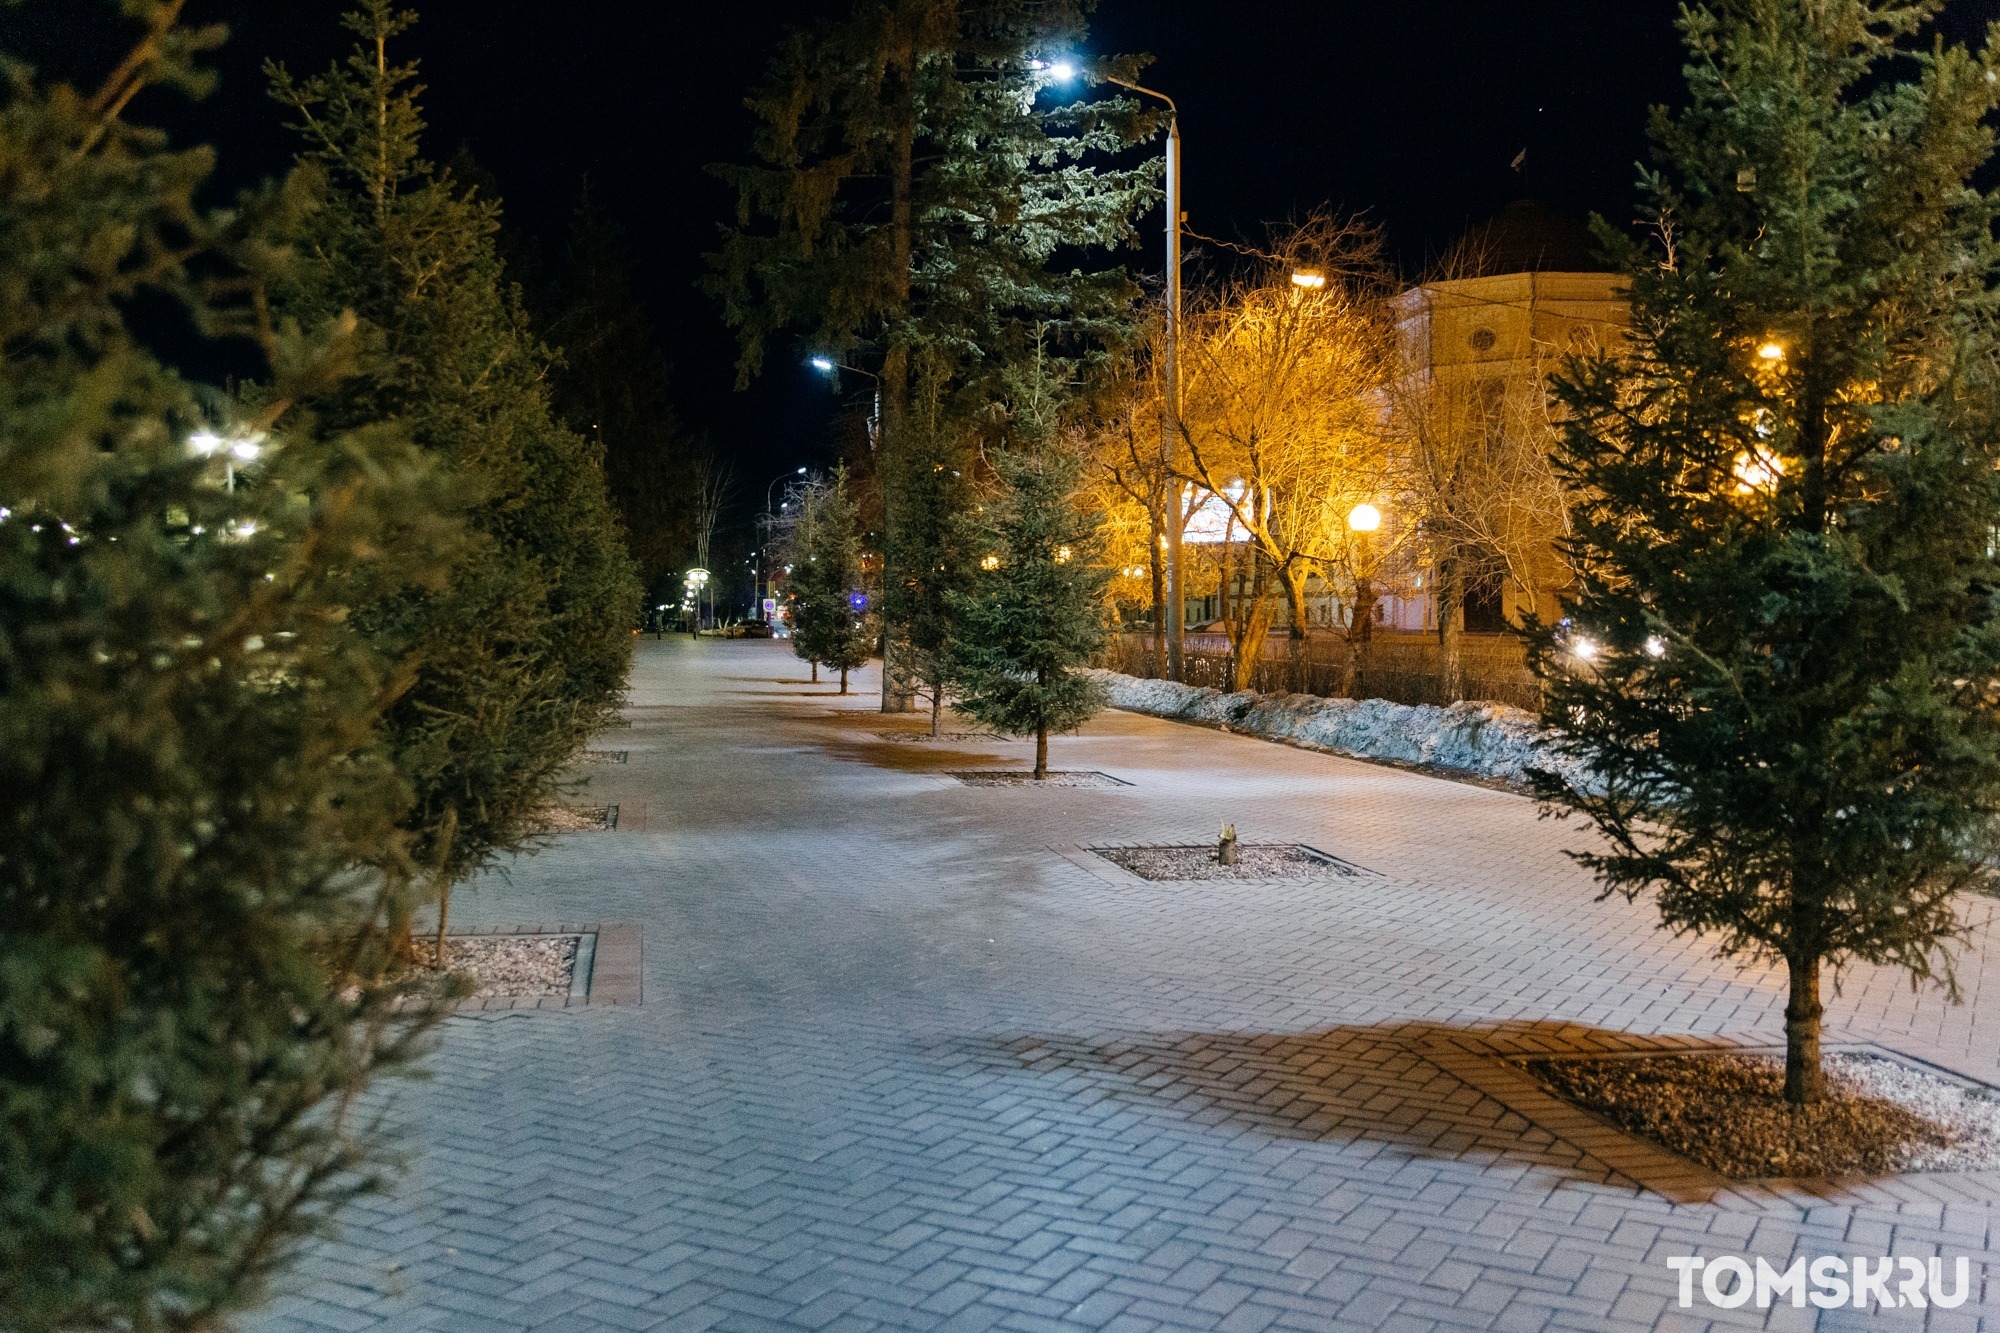 Фейерверка в новогоднюю ночь в Томске не будет